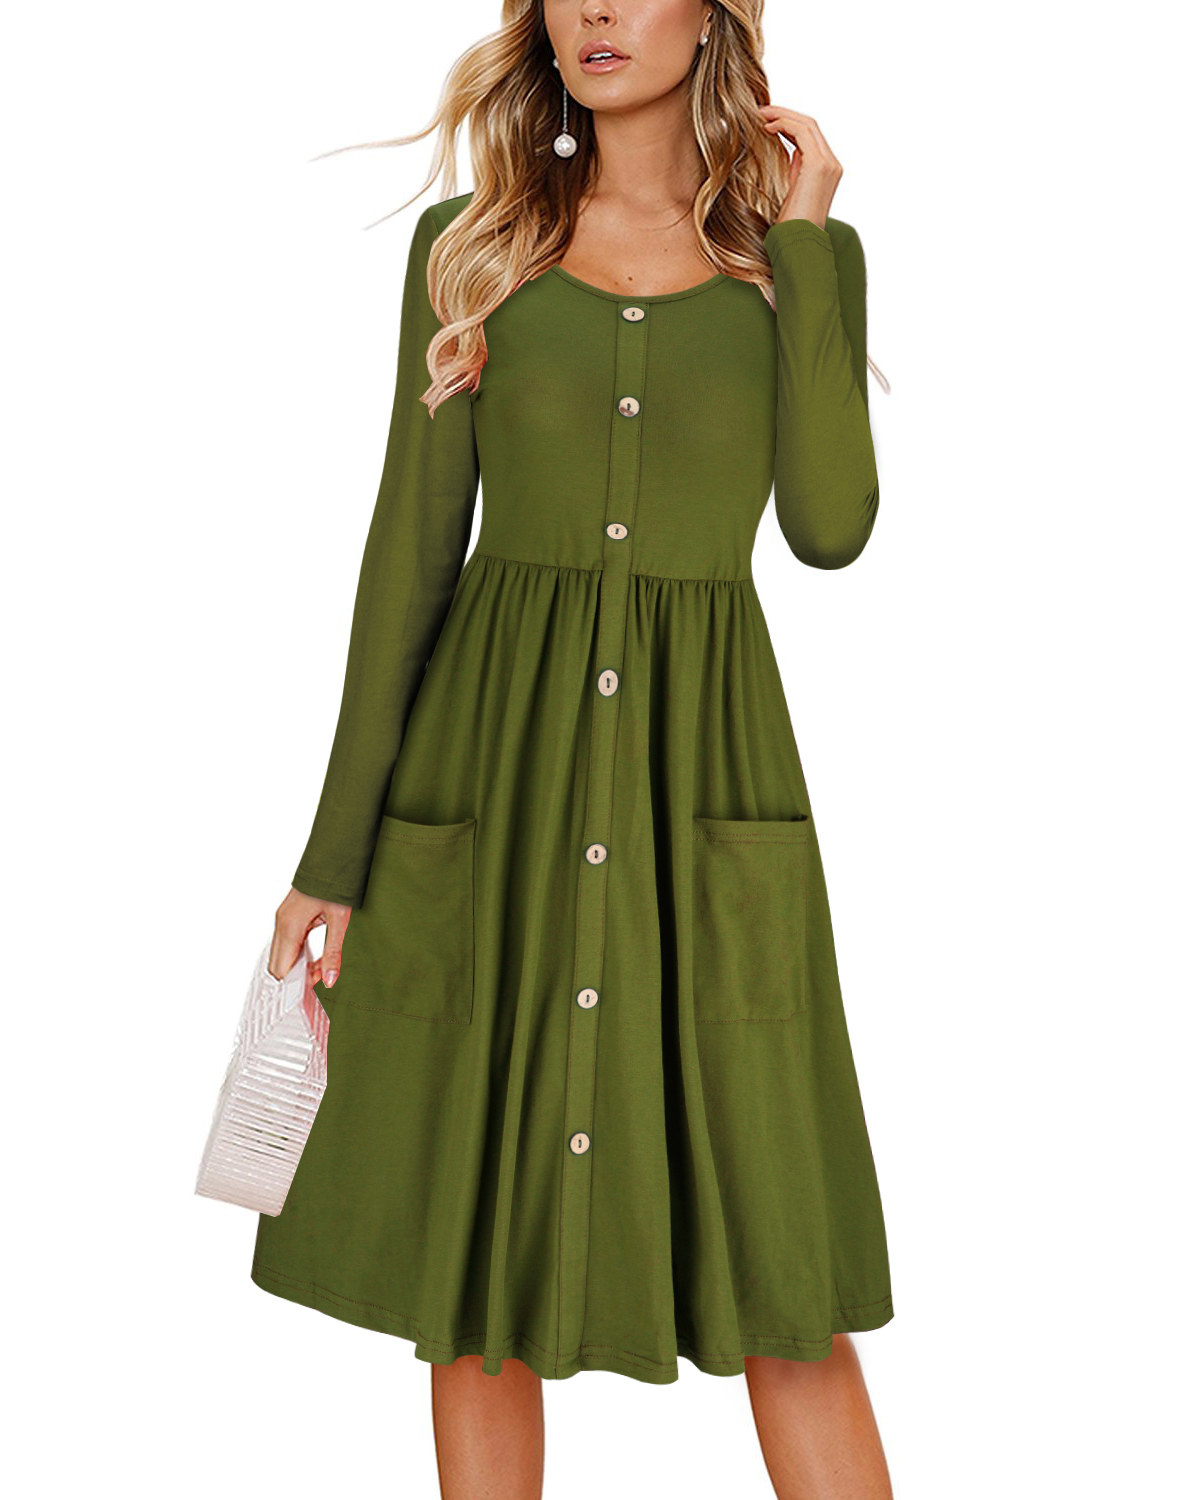 a model wearing the dress in green